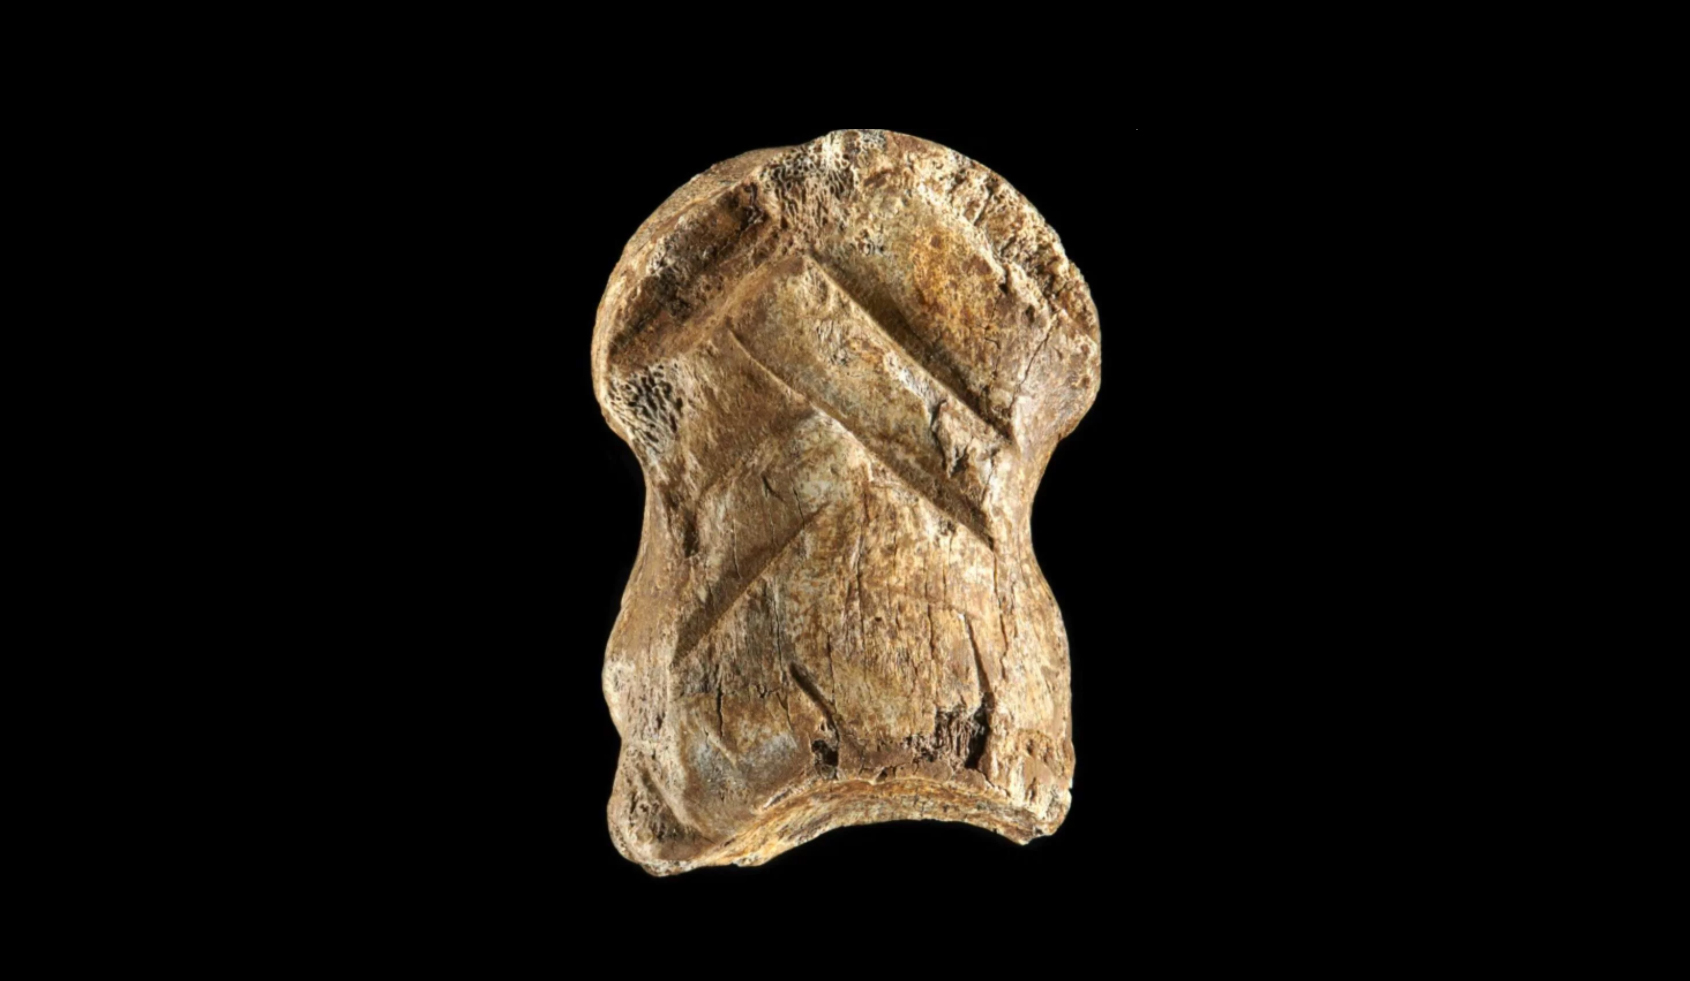 51 ezer éves díszített szarvascsont bizonyítja a neandervölgyiek művészi hajlamait